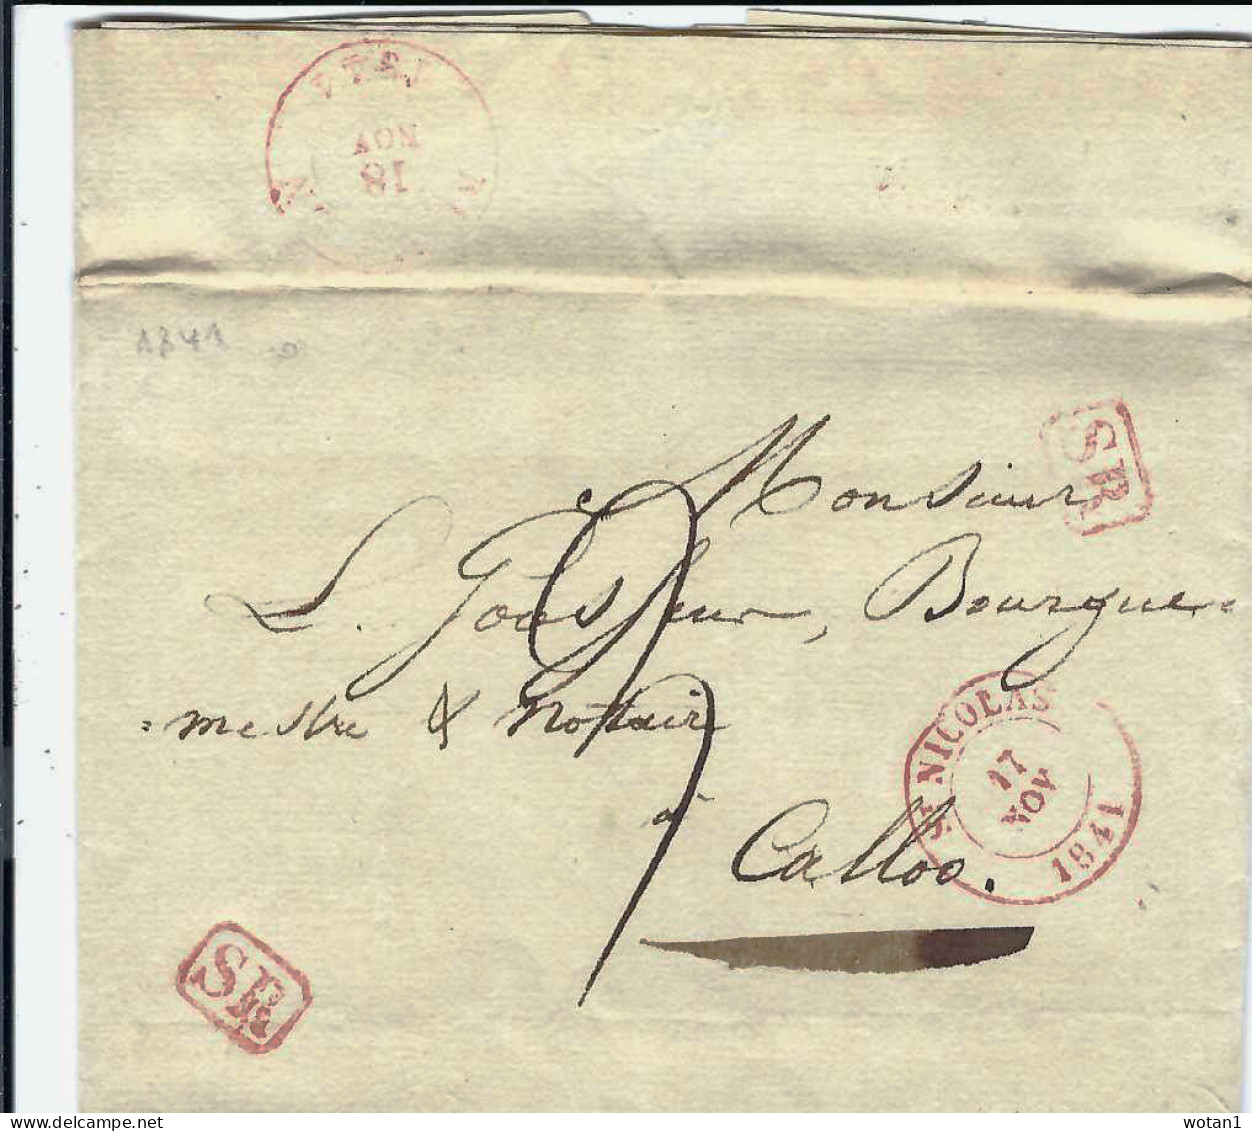 Lettre De SAINT-NICOLAS Du 17 NOV 1841 à CALLOO + Port 3 + Griffes Encadrées SR - 1830-1849 (Independent Belgium)